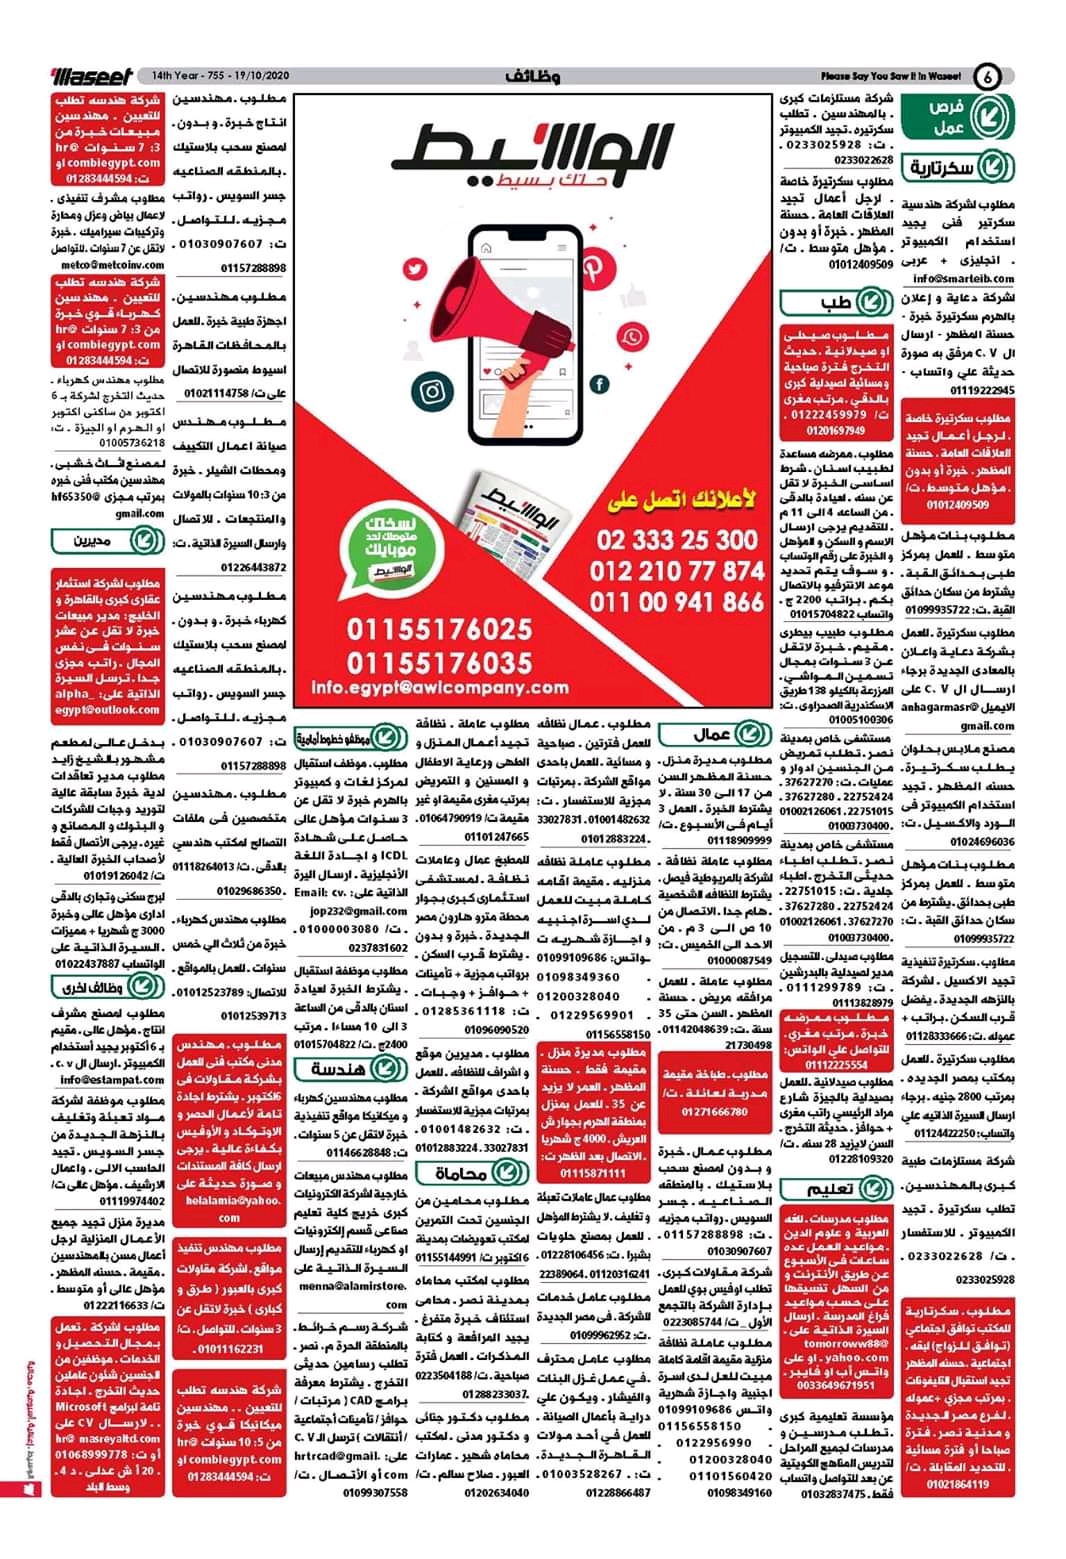 وظائف الوسيط و اعلانات مصر الاثنين 19 اكتوبر 2020 وسيط الاثنين